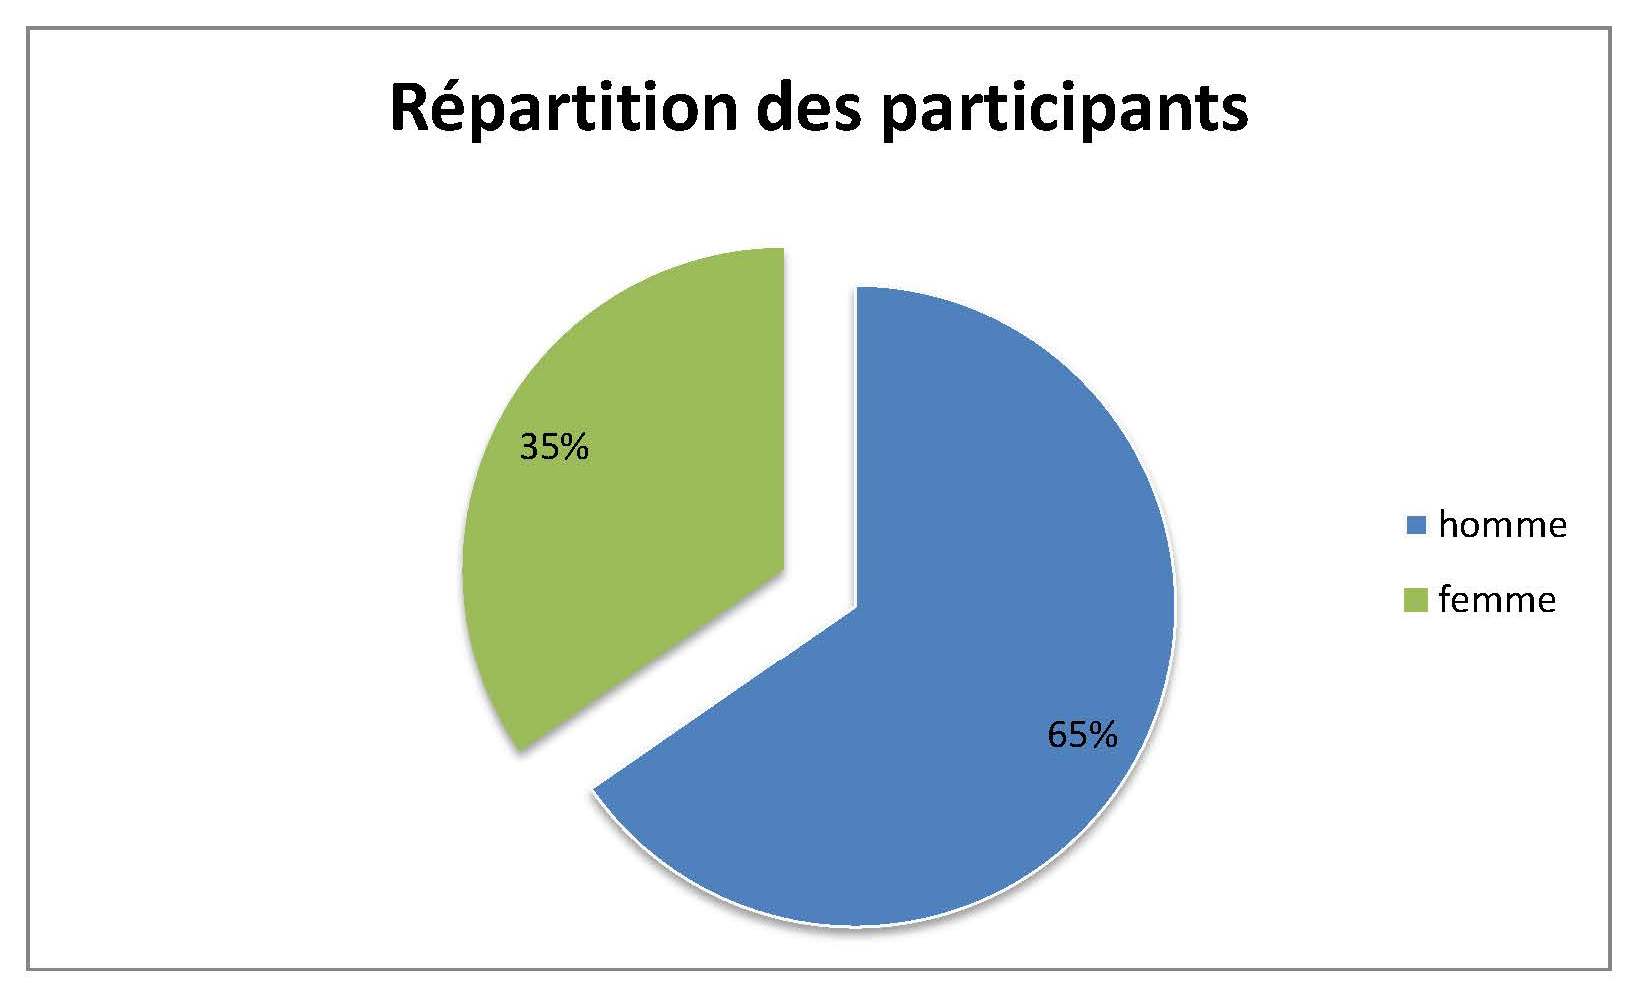 Repartition des participants 2016 - camembert